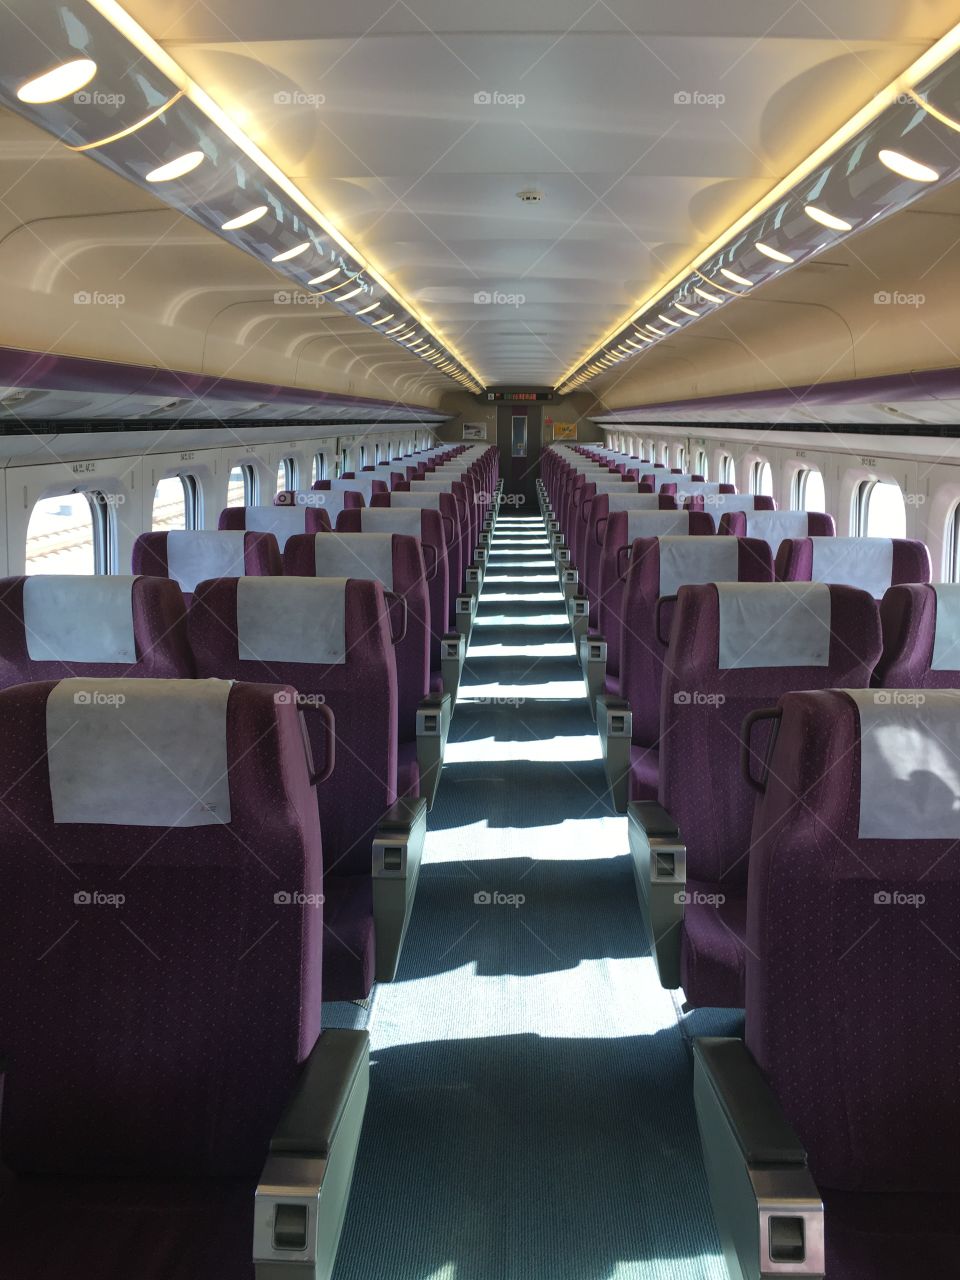 Empty train car